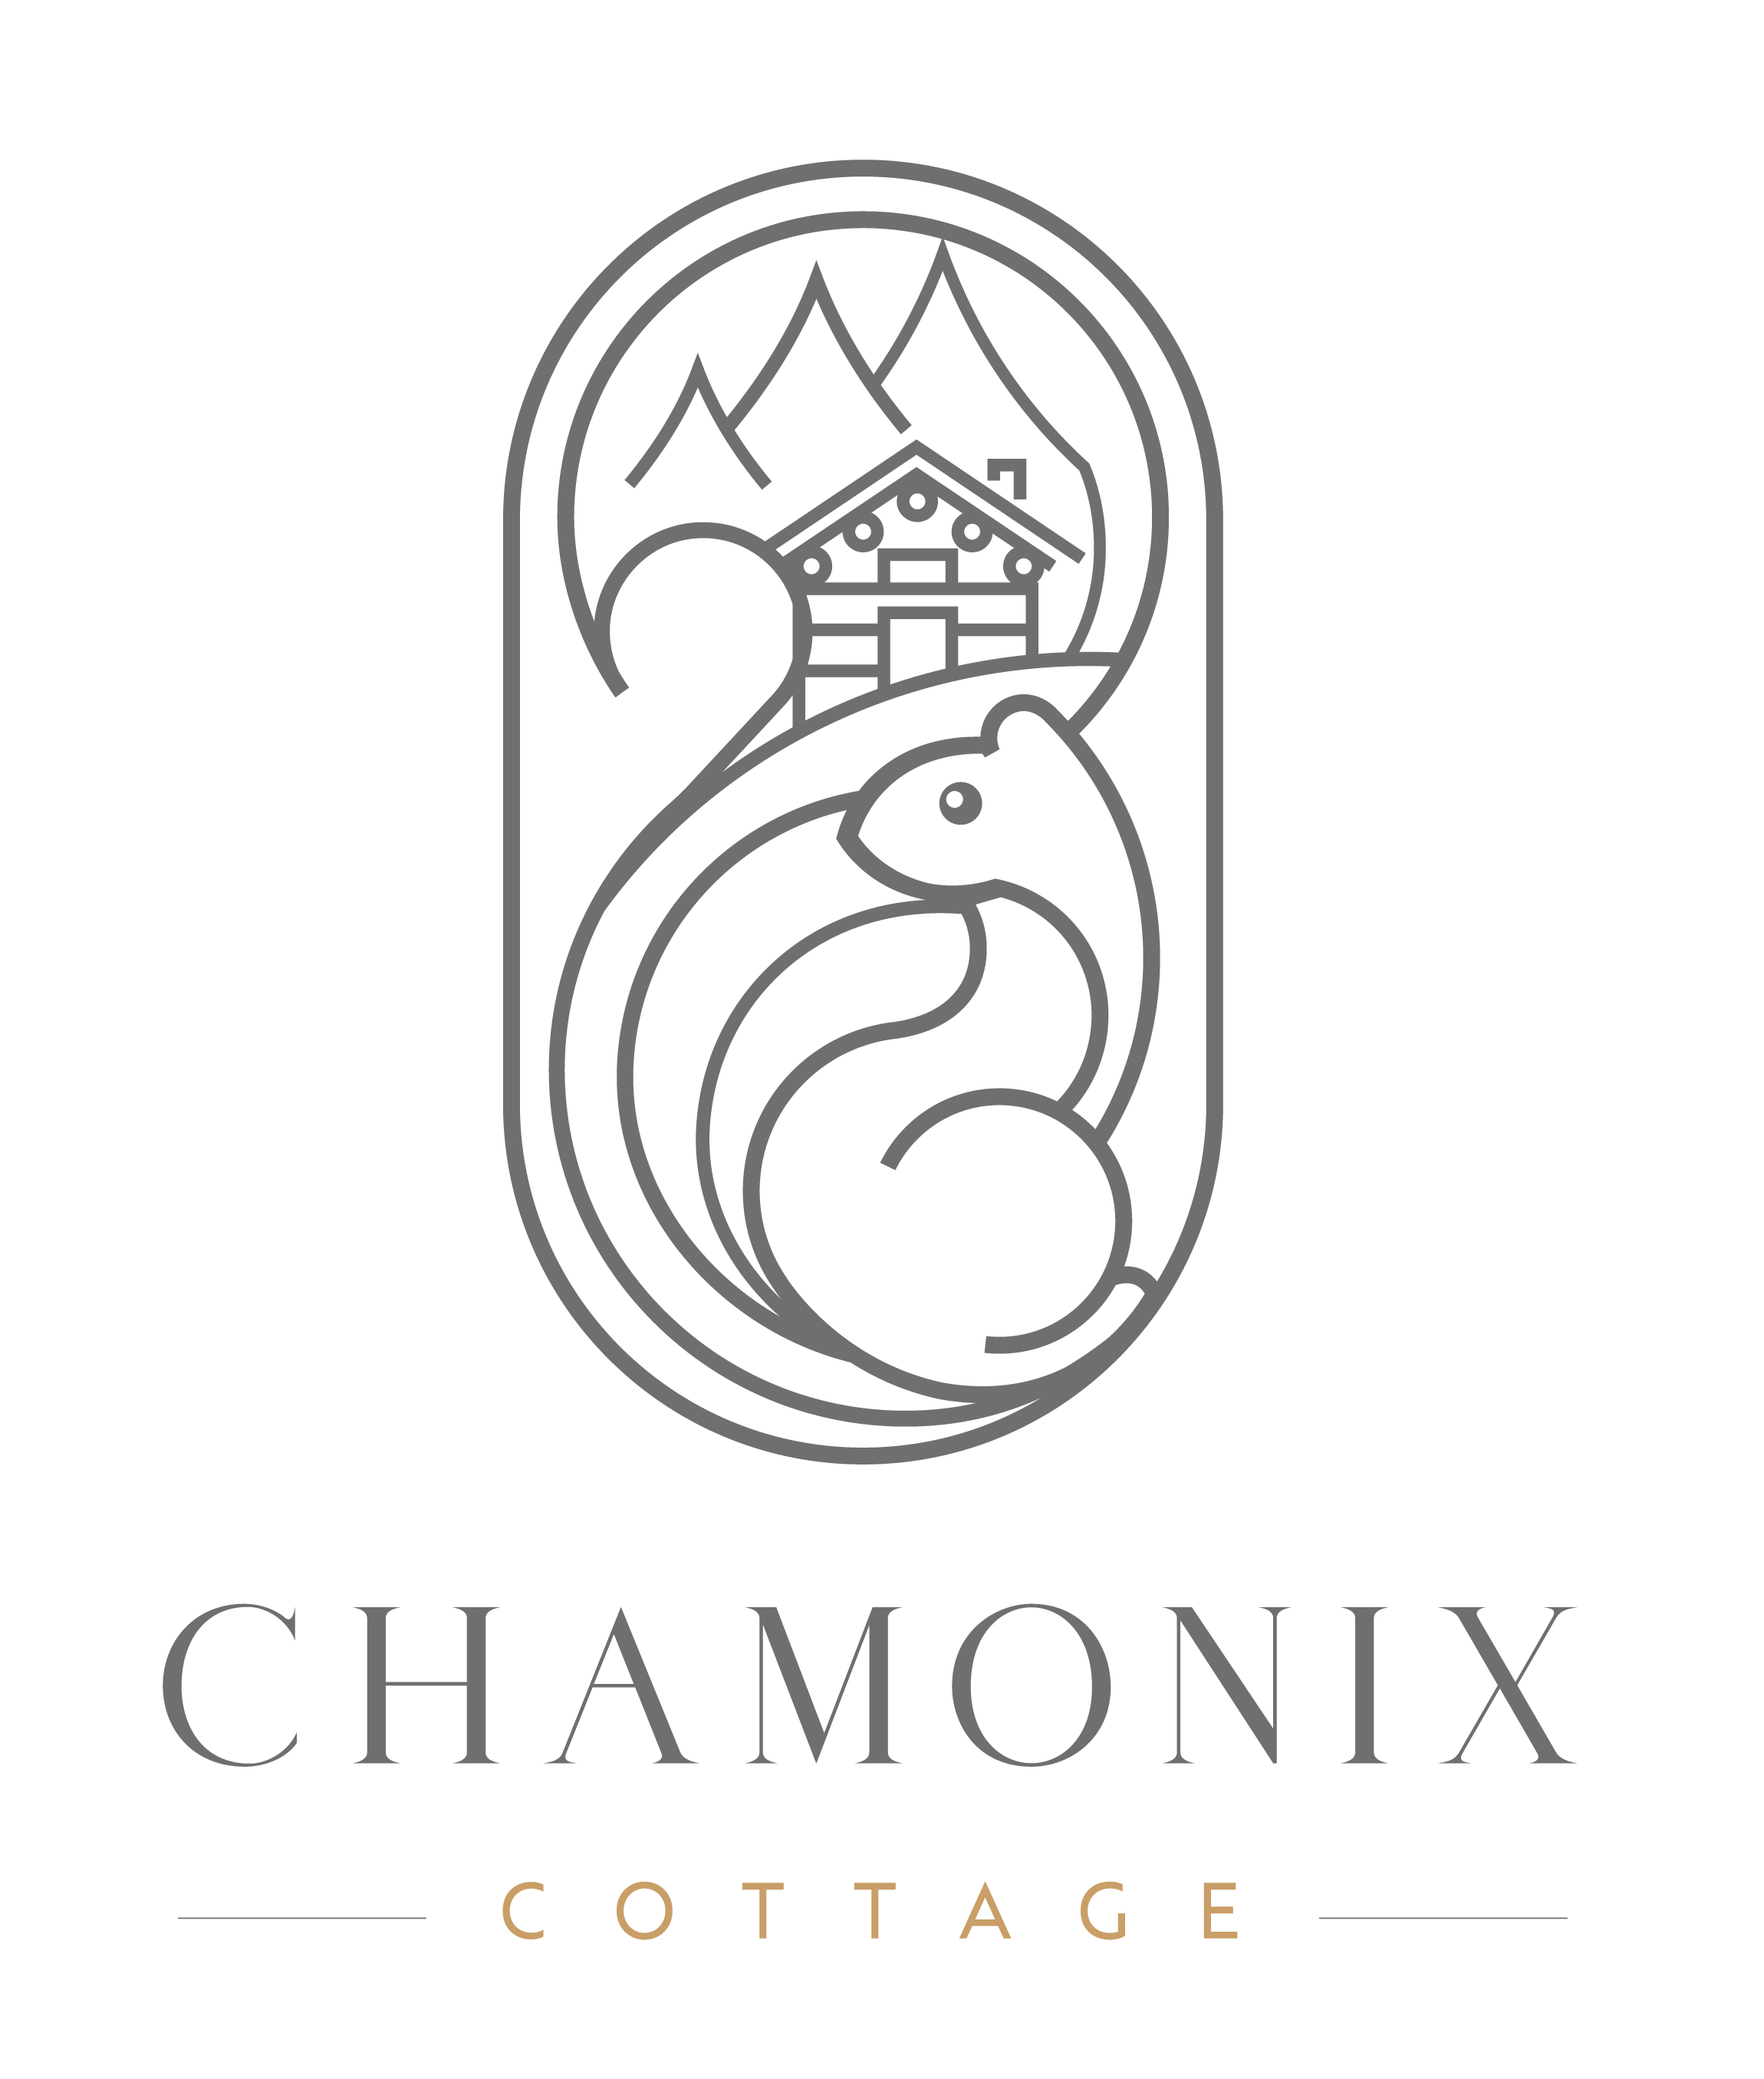 Chamonix Cottage | Cottage Chamonix - Chamonix Cottage